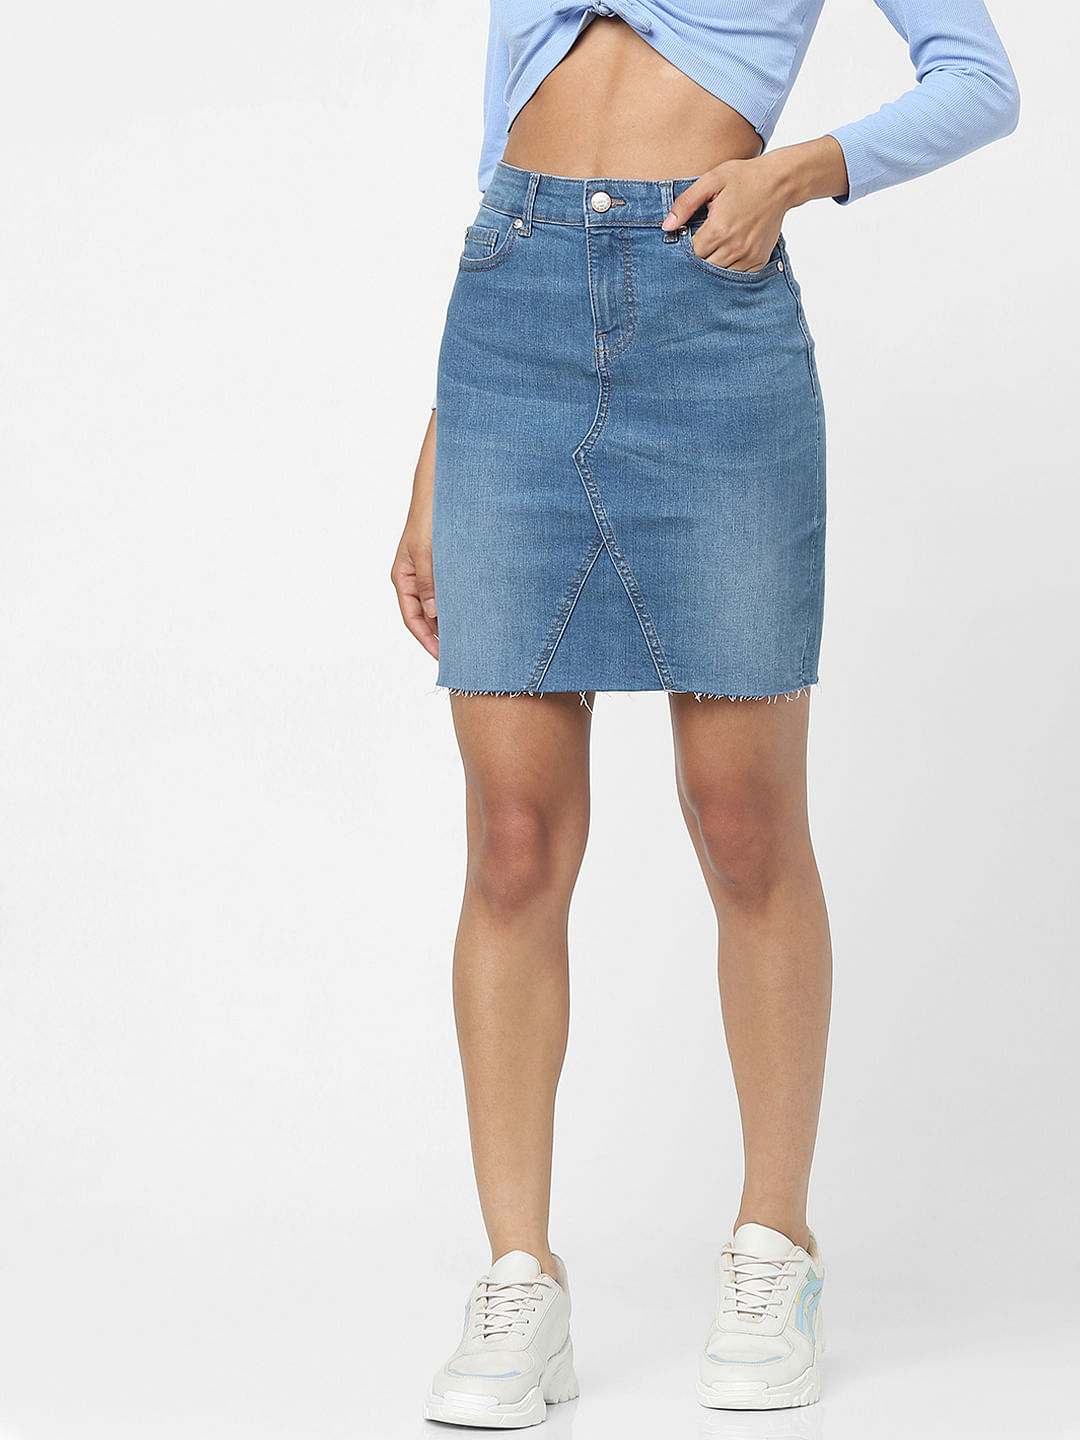 Kids Girl Casual Outfit Off Shoulder Denim Crop Top + Jeans Skirt Set  Clothes | Fruugo KR